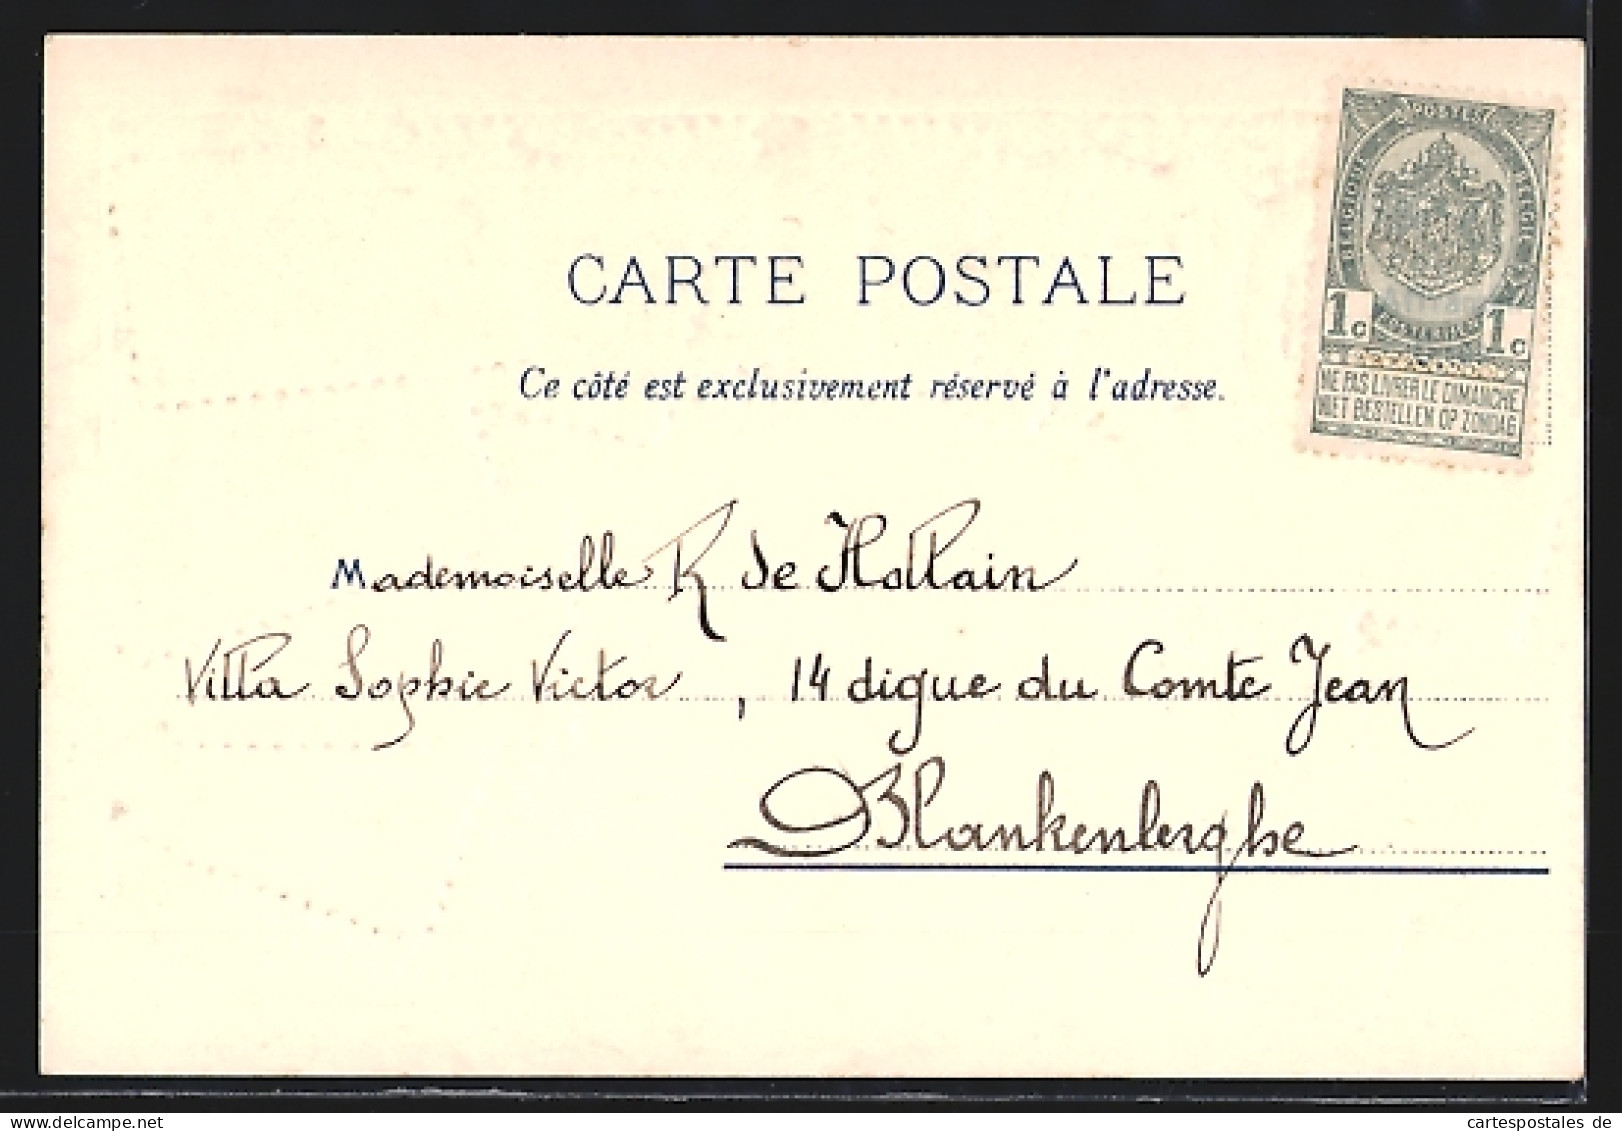 Präge-Lithographie Frankreich, Wappen Und Briefmarken  - Stamps (pictures)